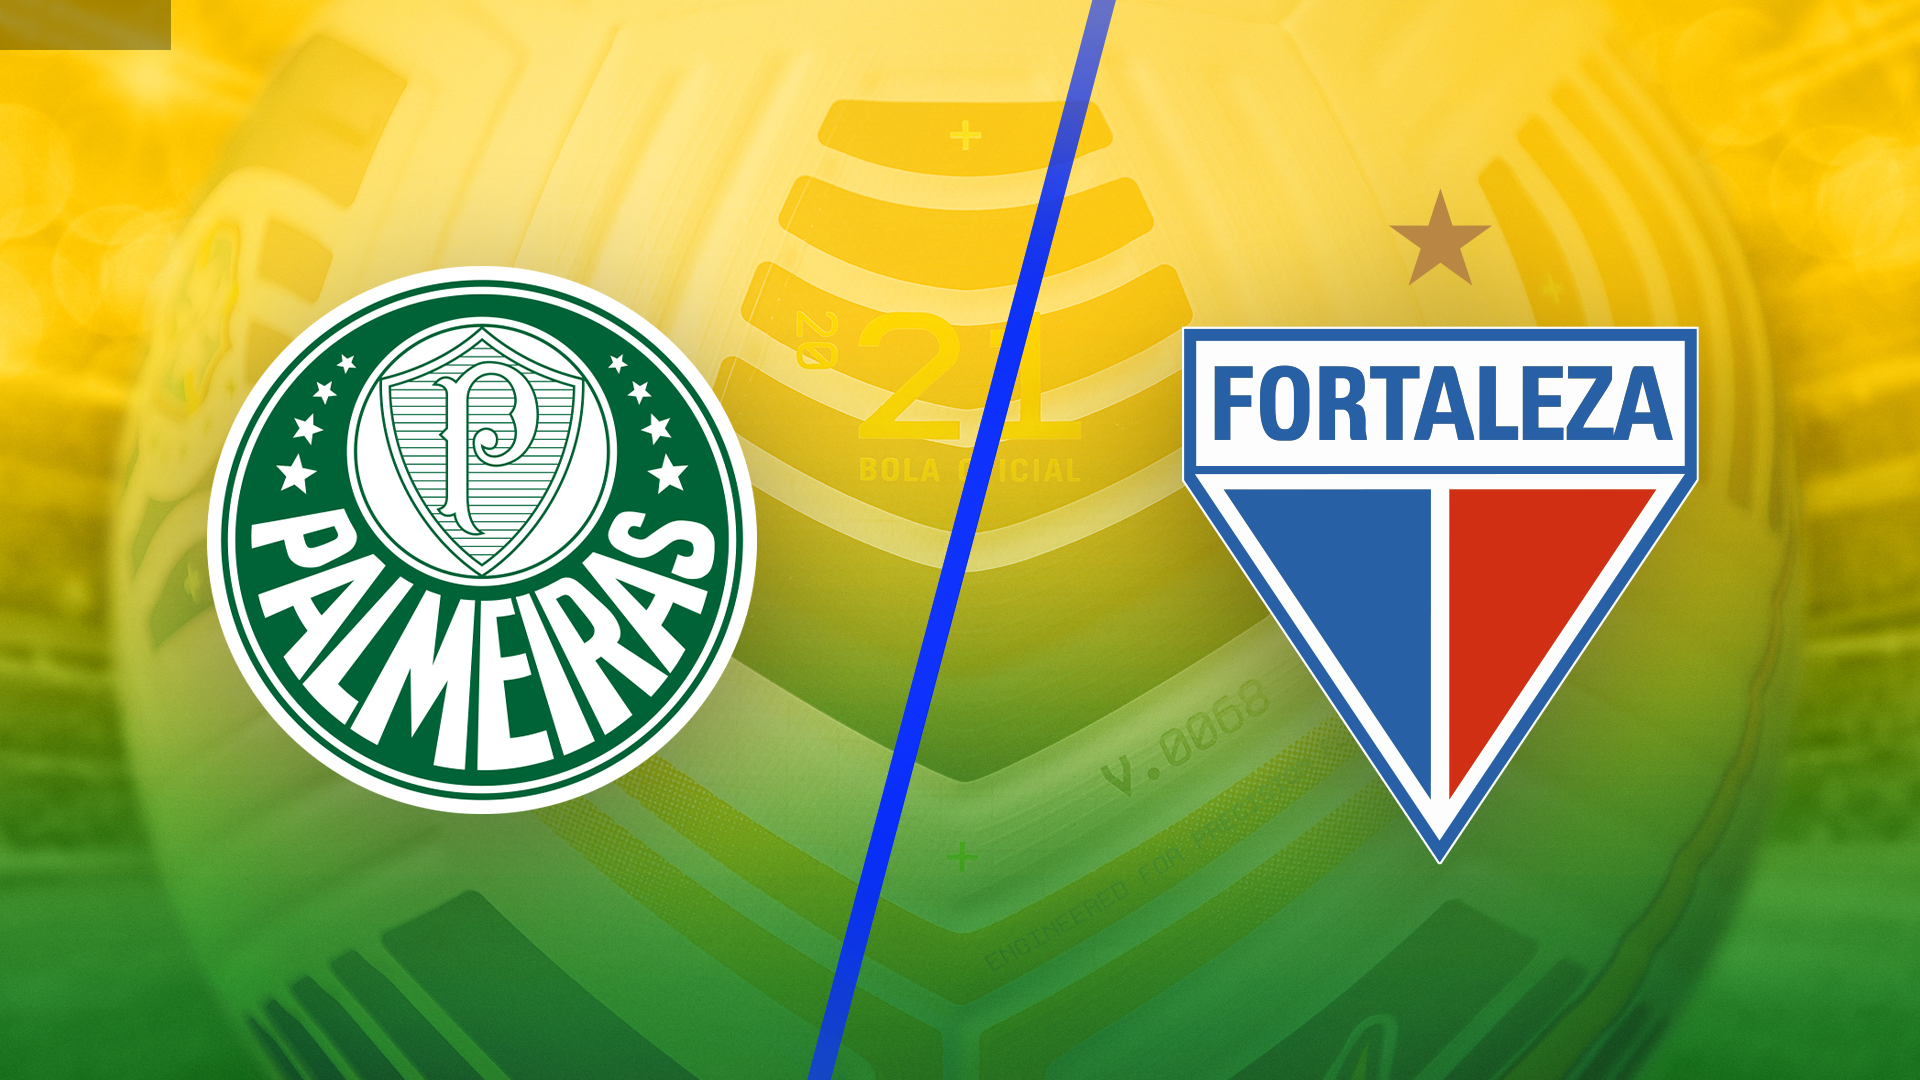 مشاهدة مباراة بالميراس وفورتاليزا بث مباشر في الدوري البرازيلي Fortaleza Vs Palmeiras